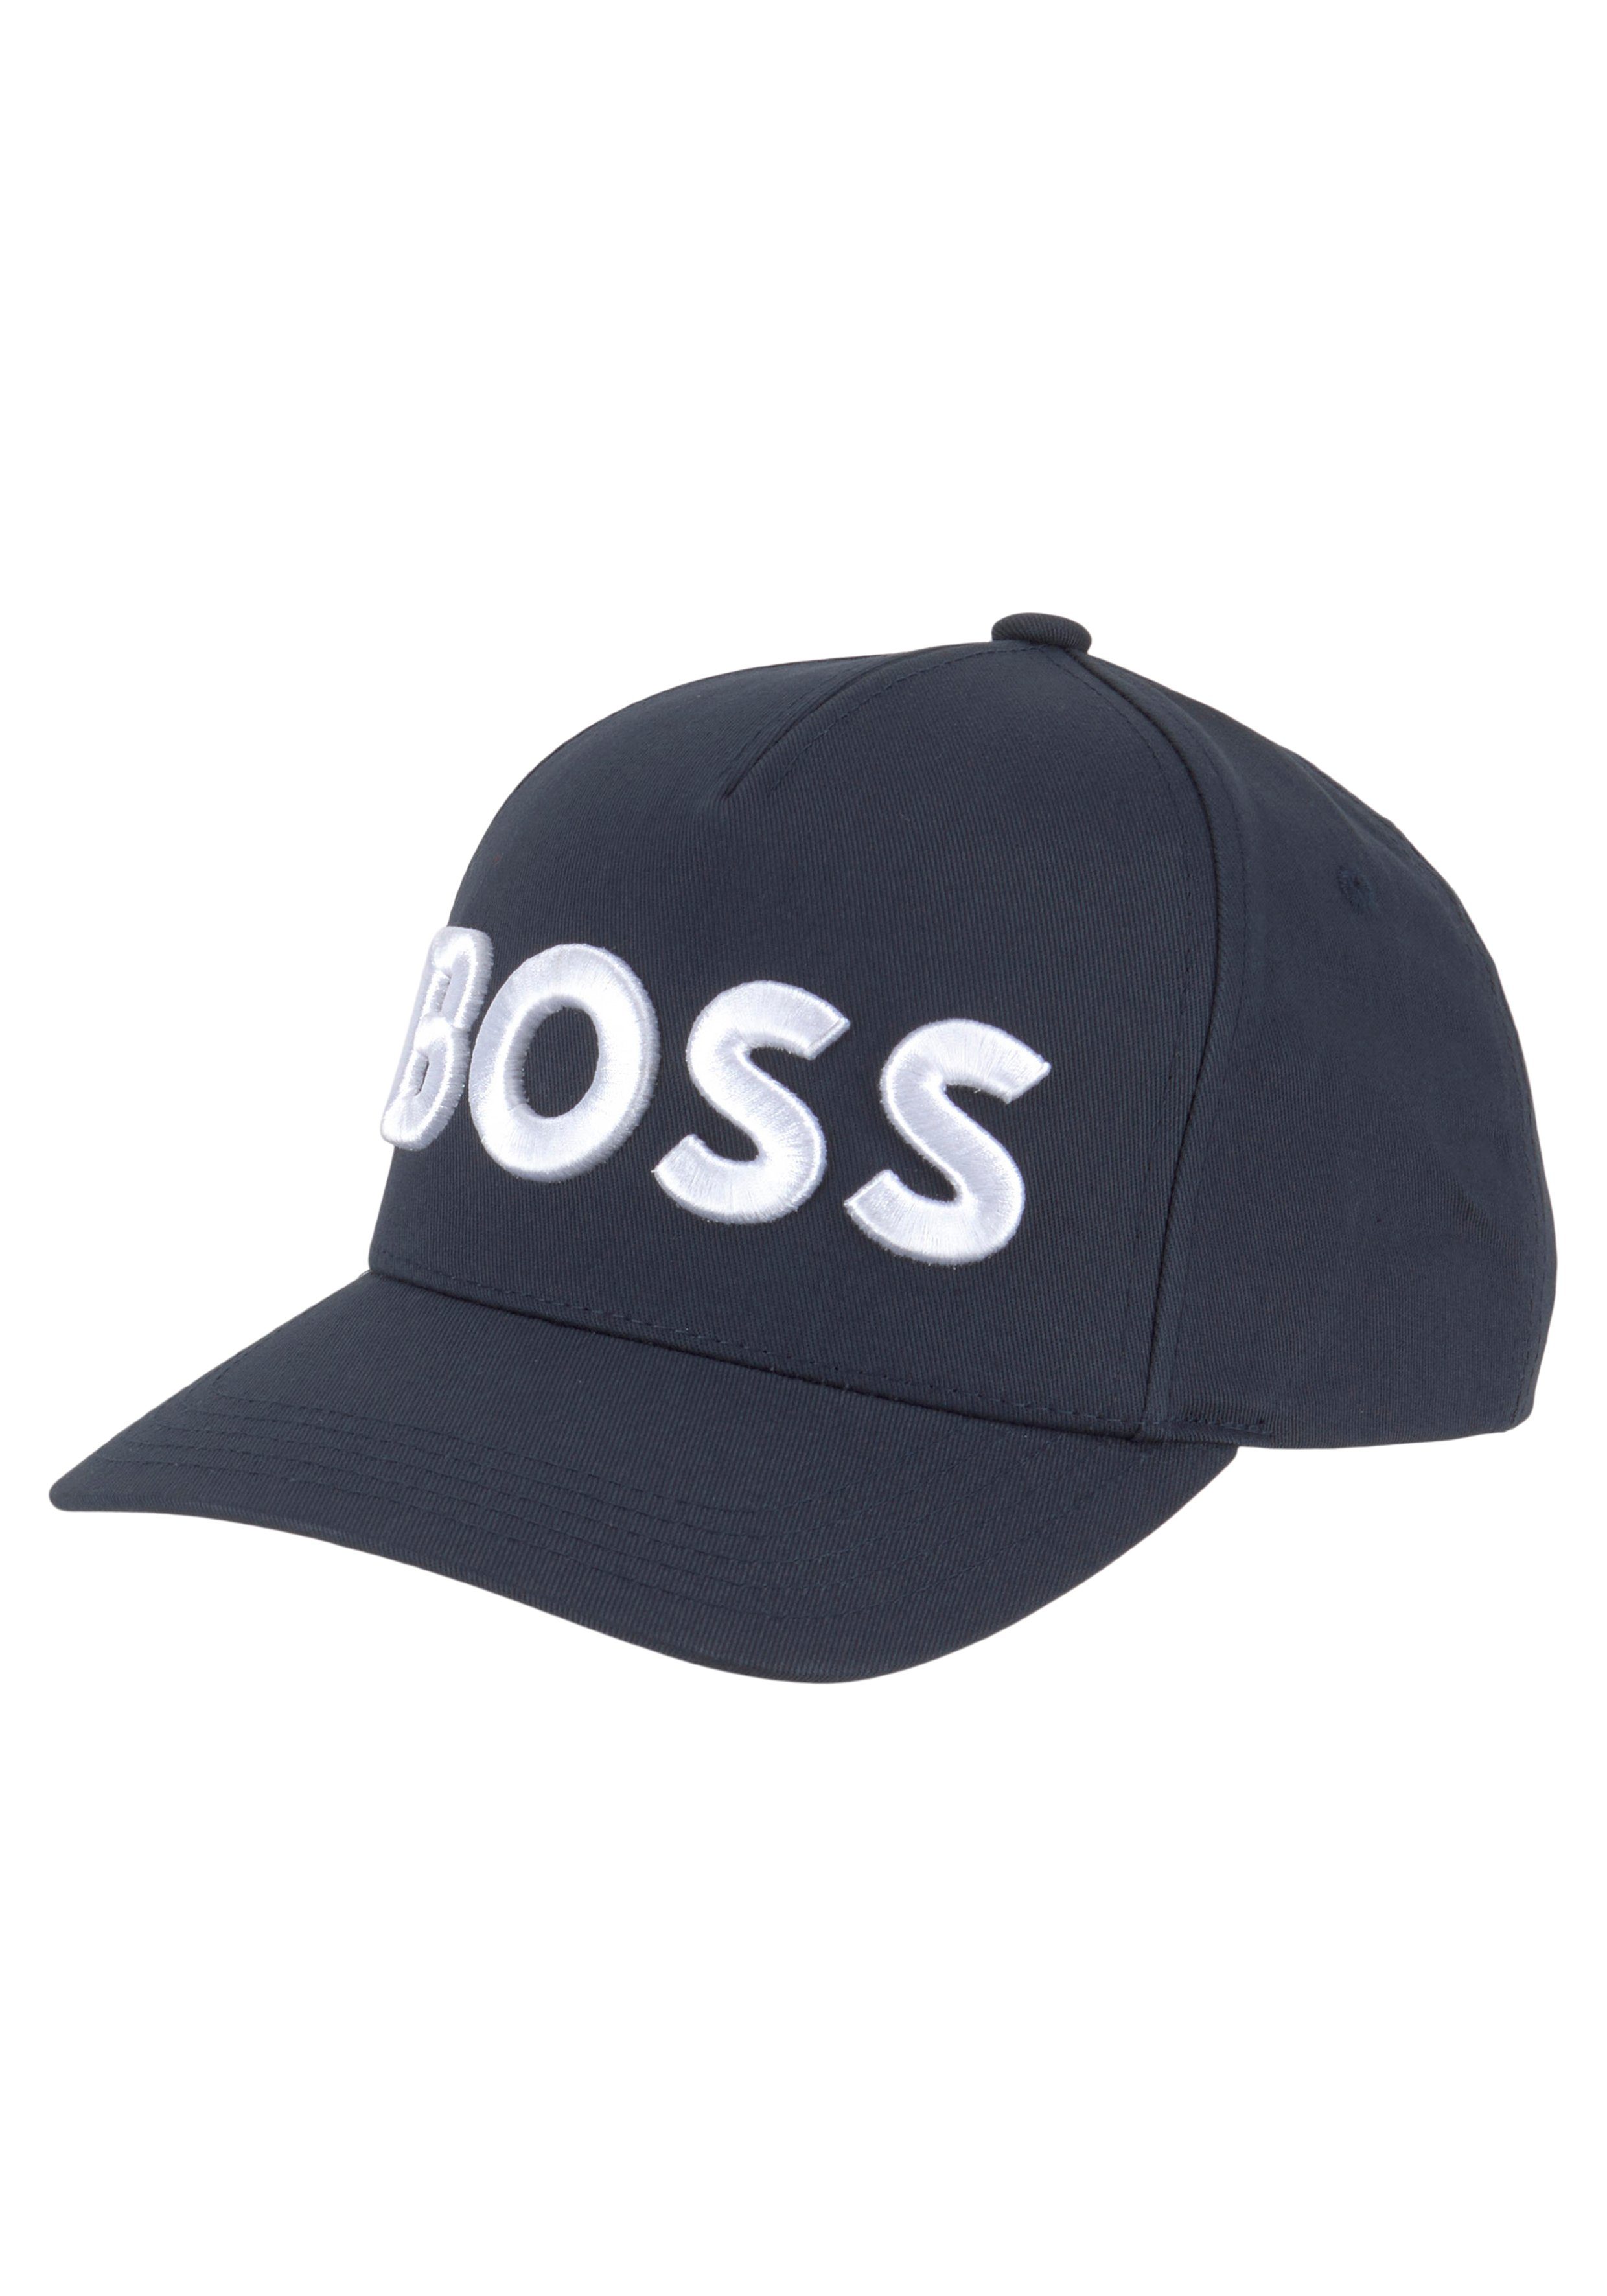 BOSS mit Baseball kontrastfarbenem dunkelblau Cap Labelschriftzug Sevile-BOSS-6